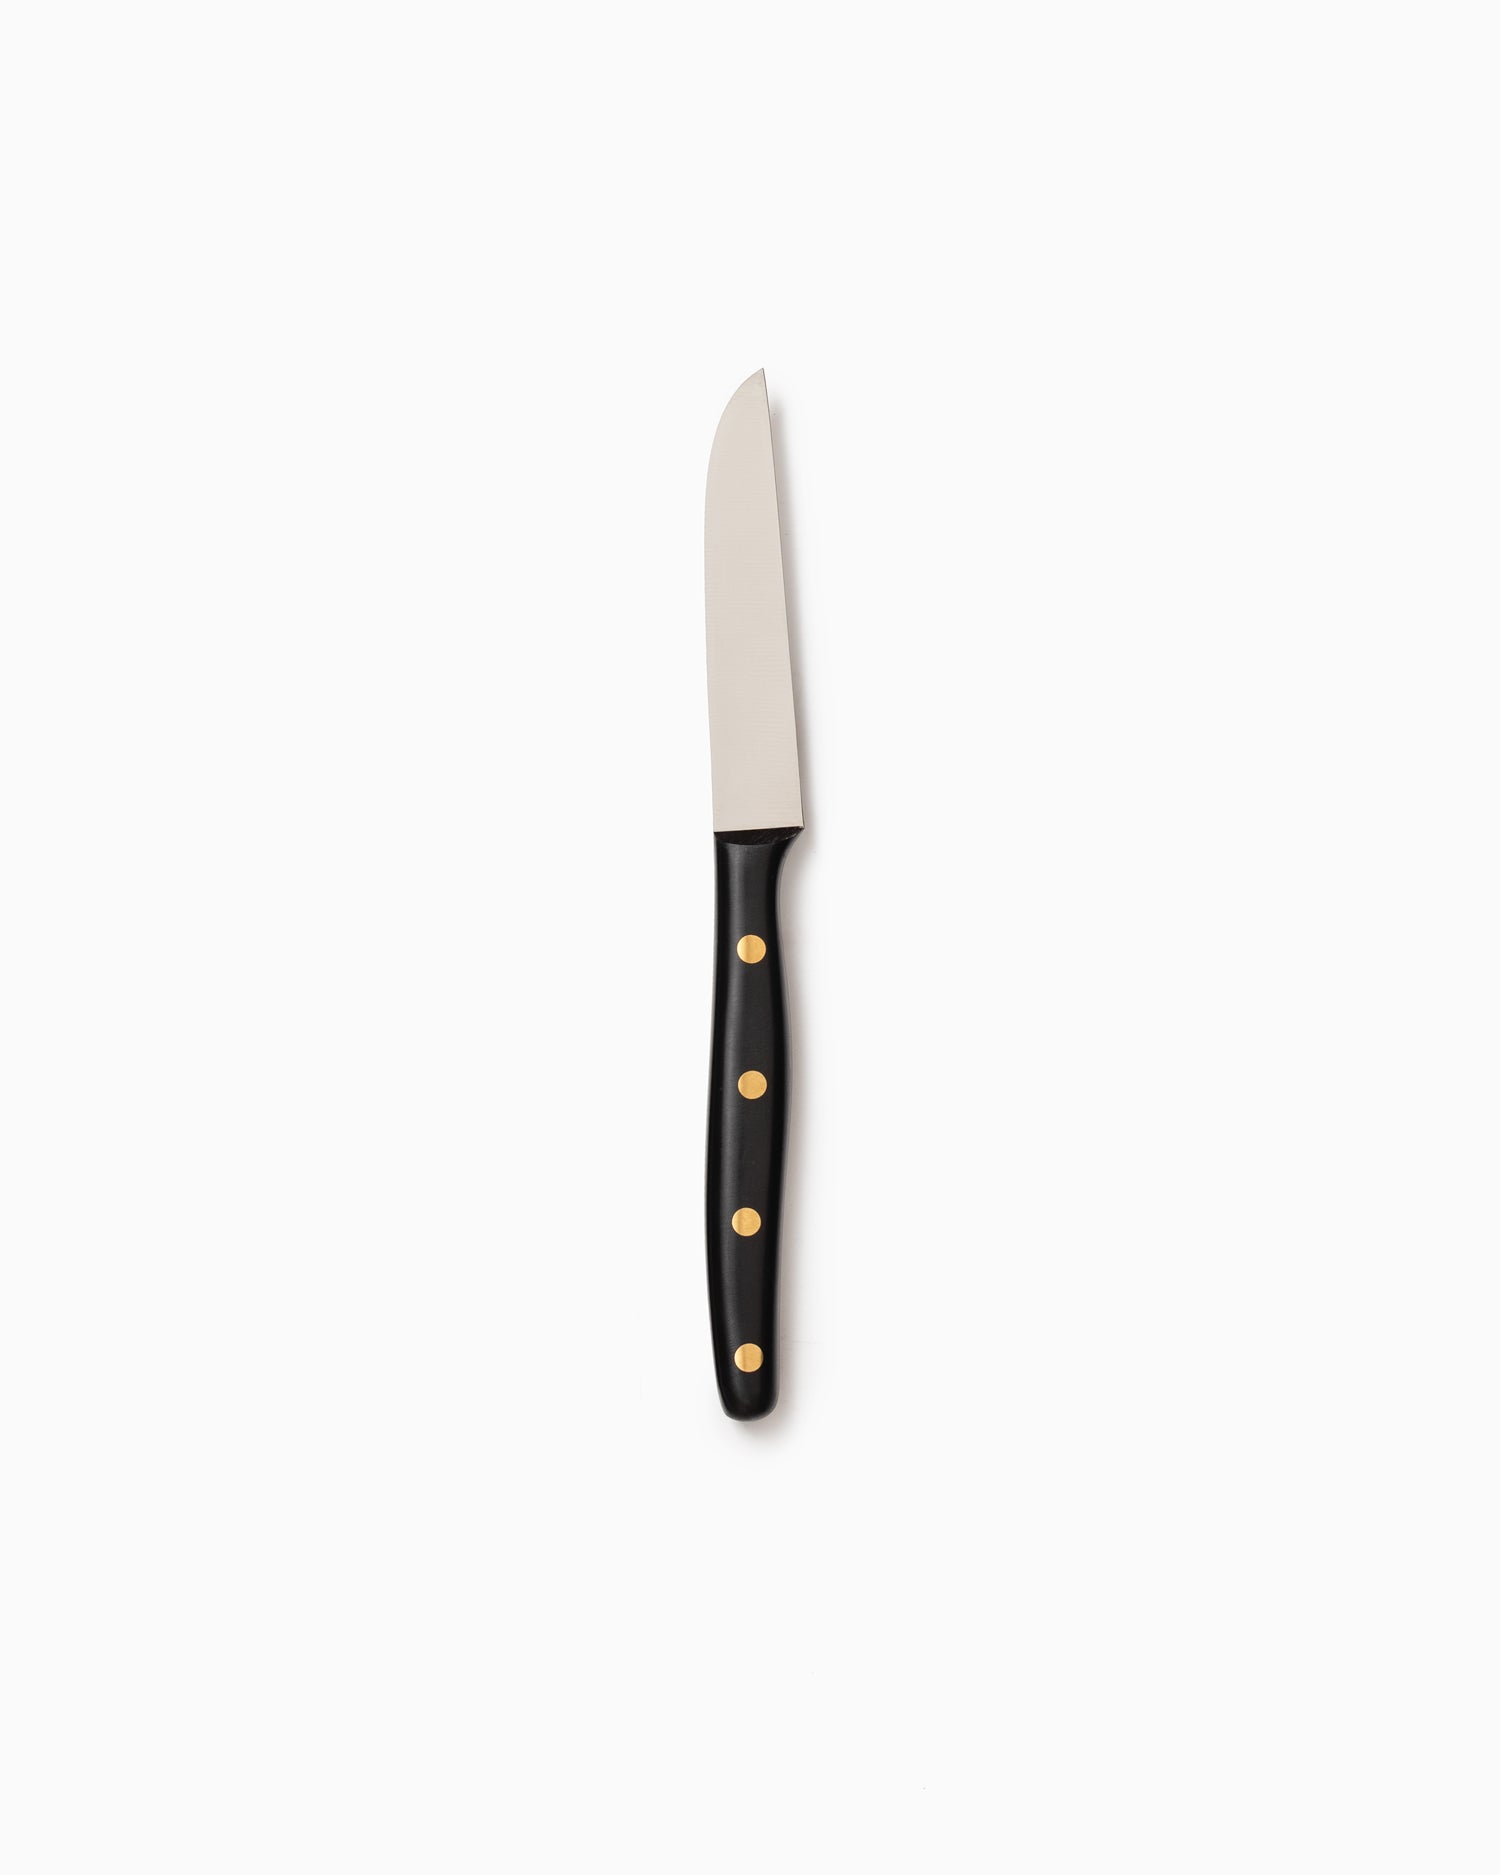 Robert Herder K1 Kitchen Knife - Stainless